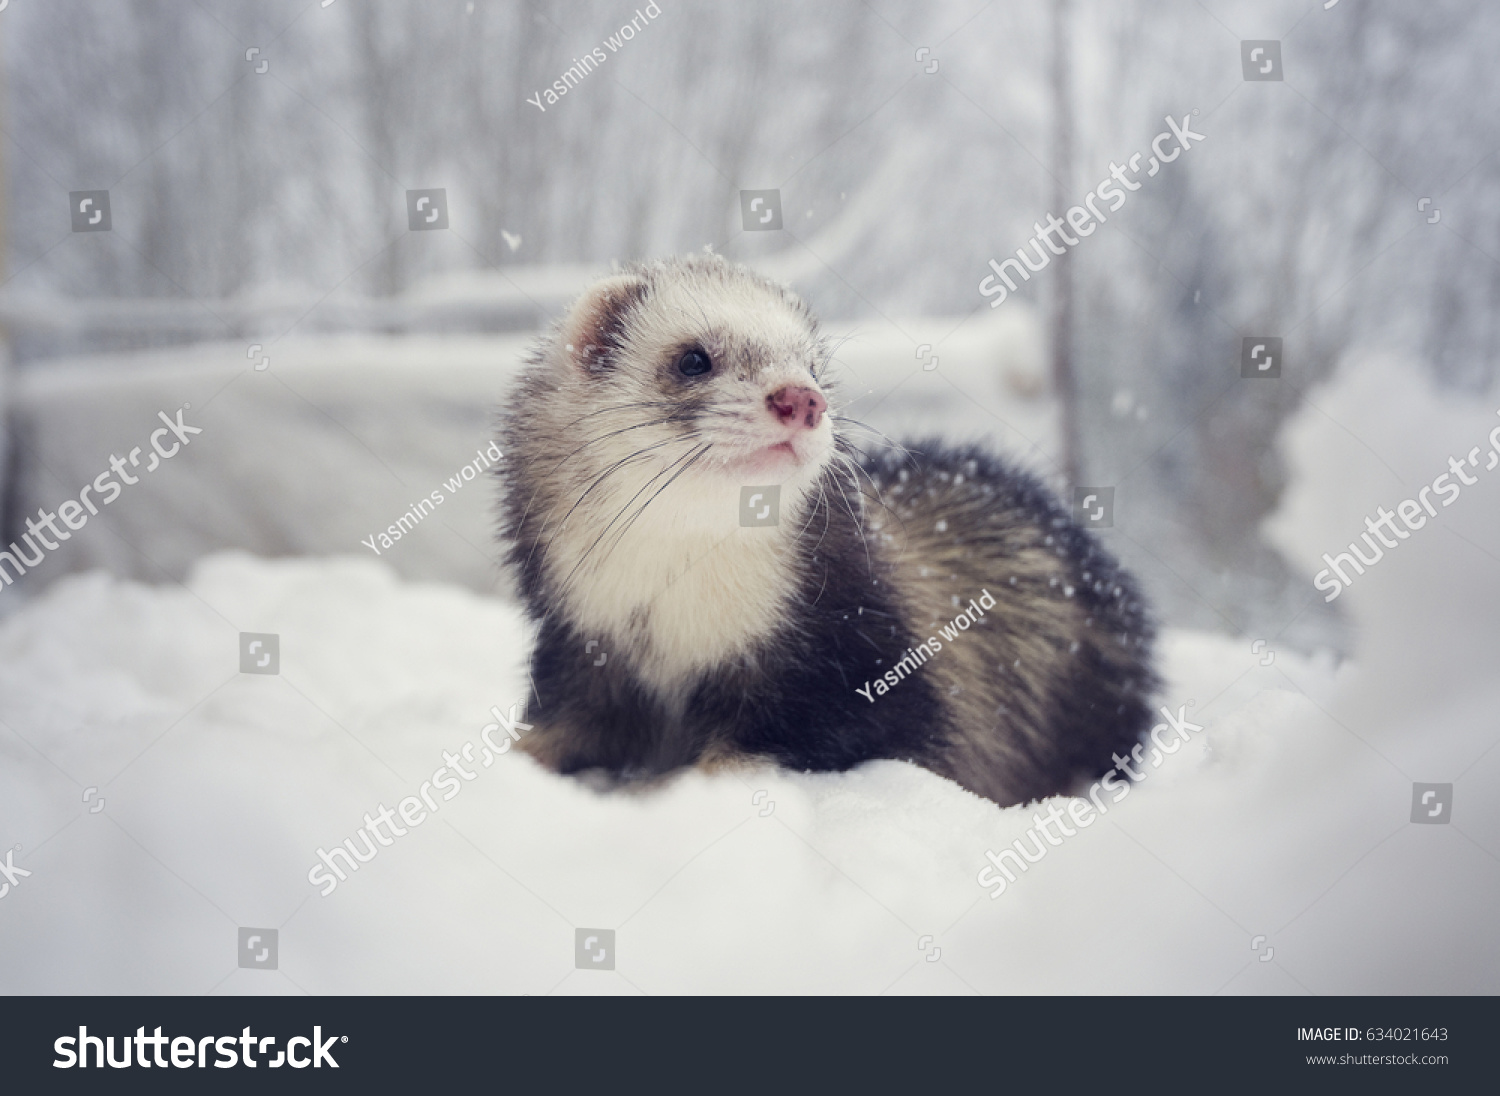 Sable Mitt Ferret White Bib Snow Stock Photo Edit Now 634021643